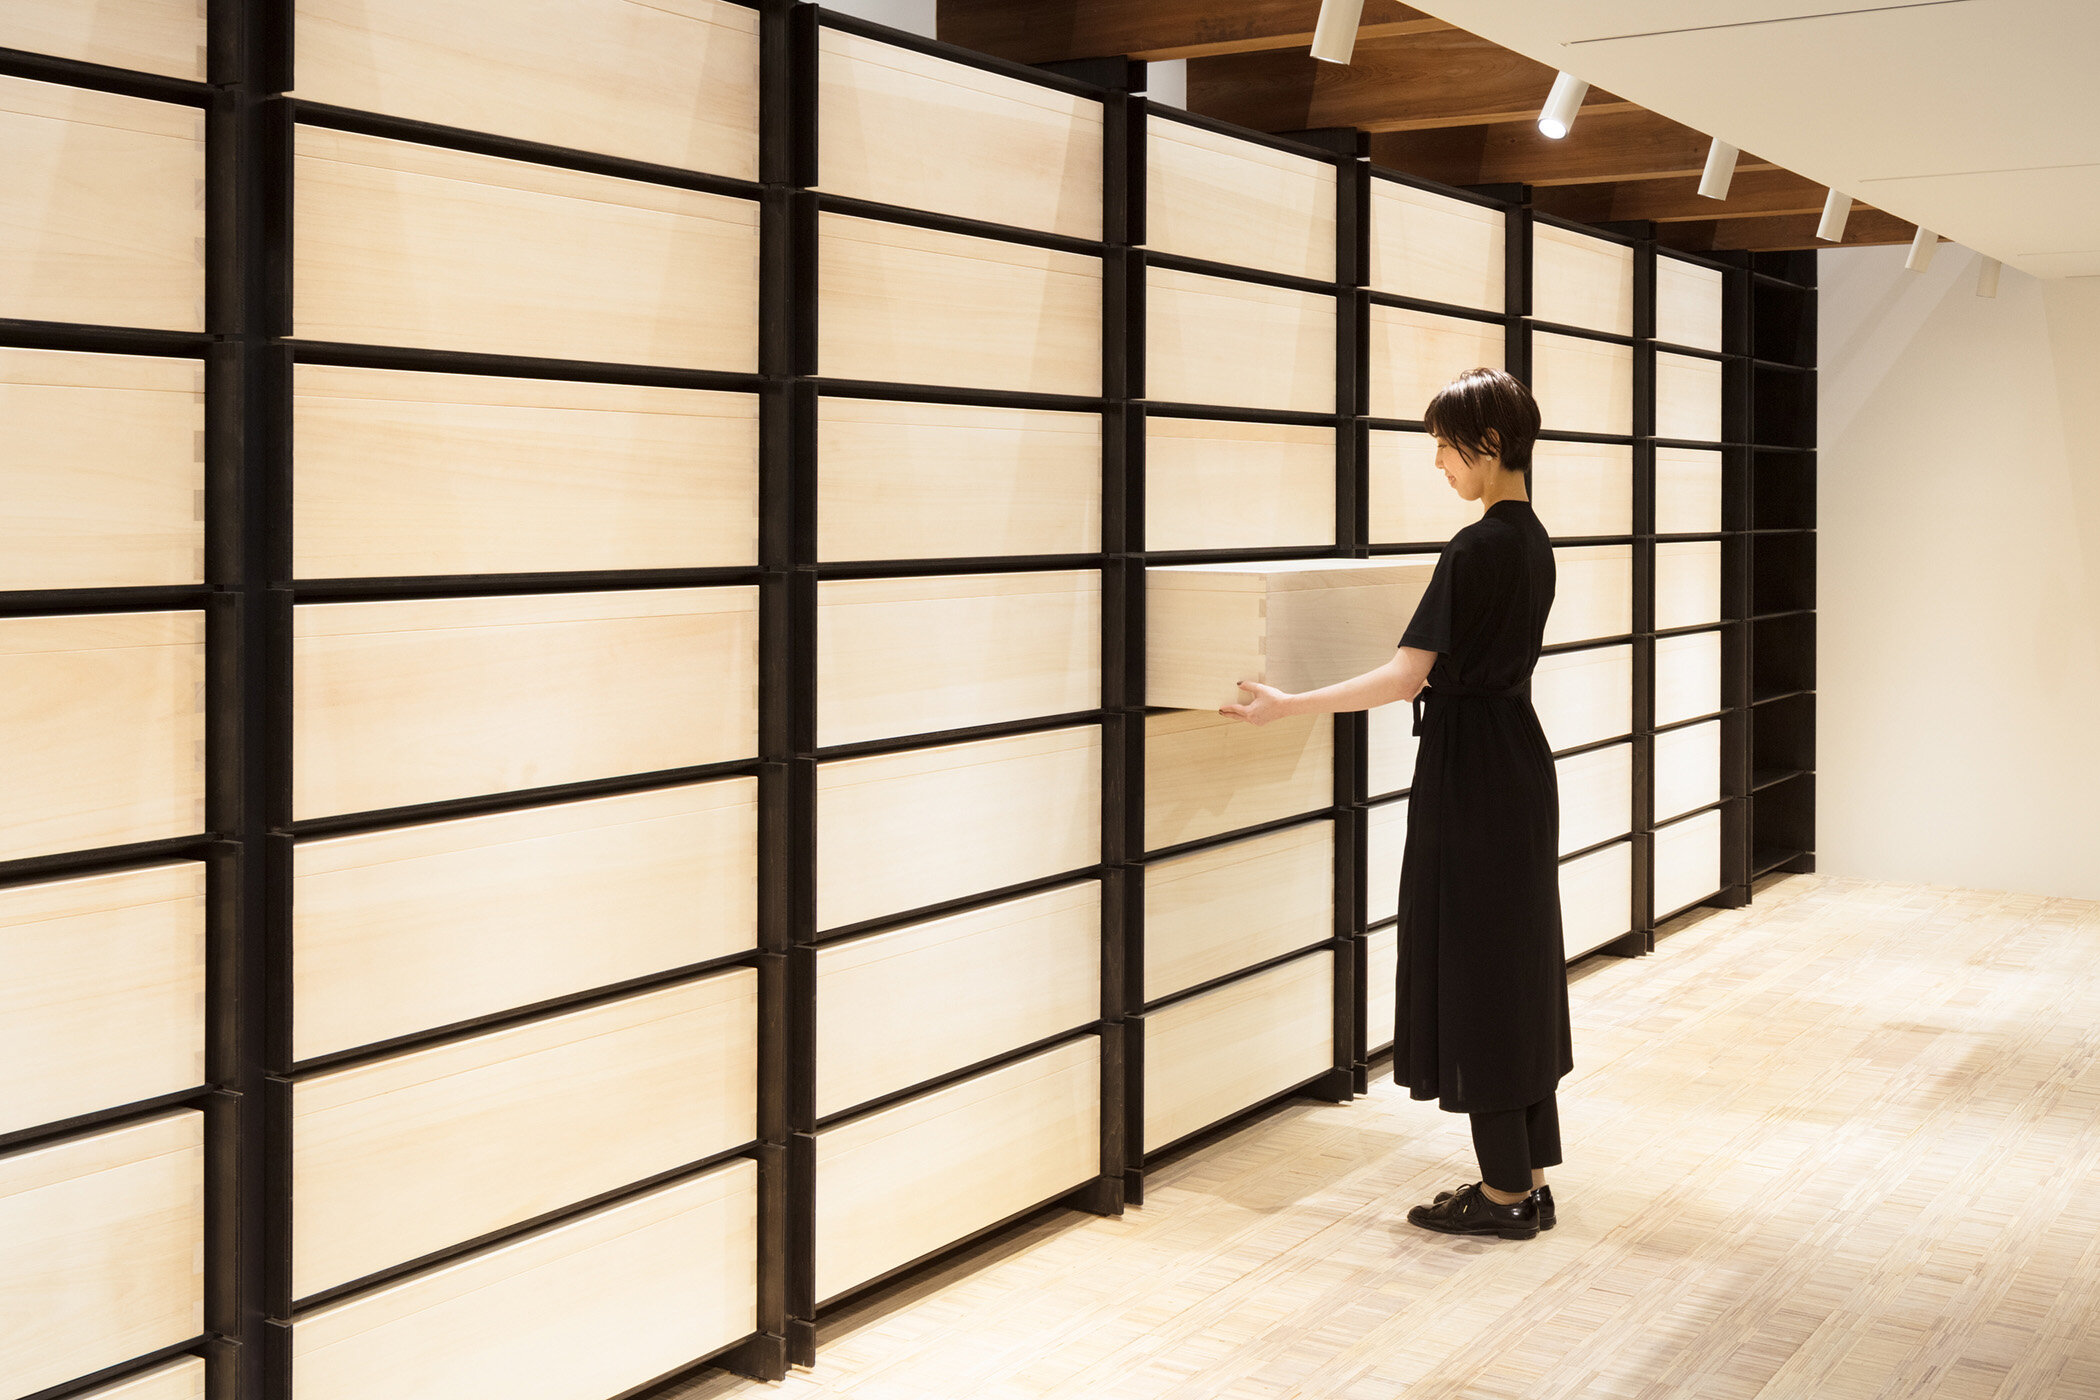  A wall shelf of Tokigura designed by Tadahiro Butsugan/ABOUT.  